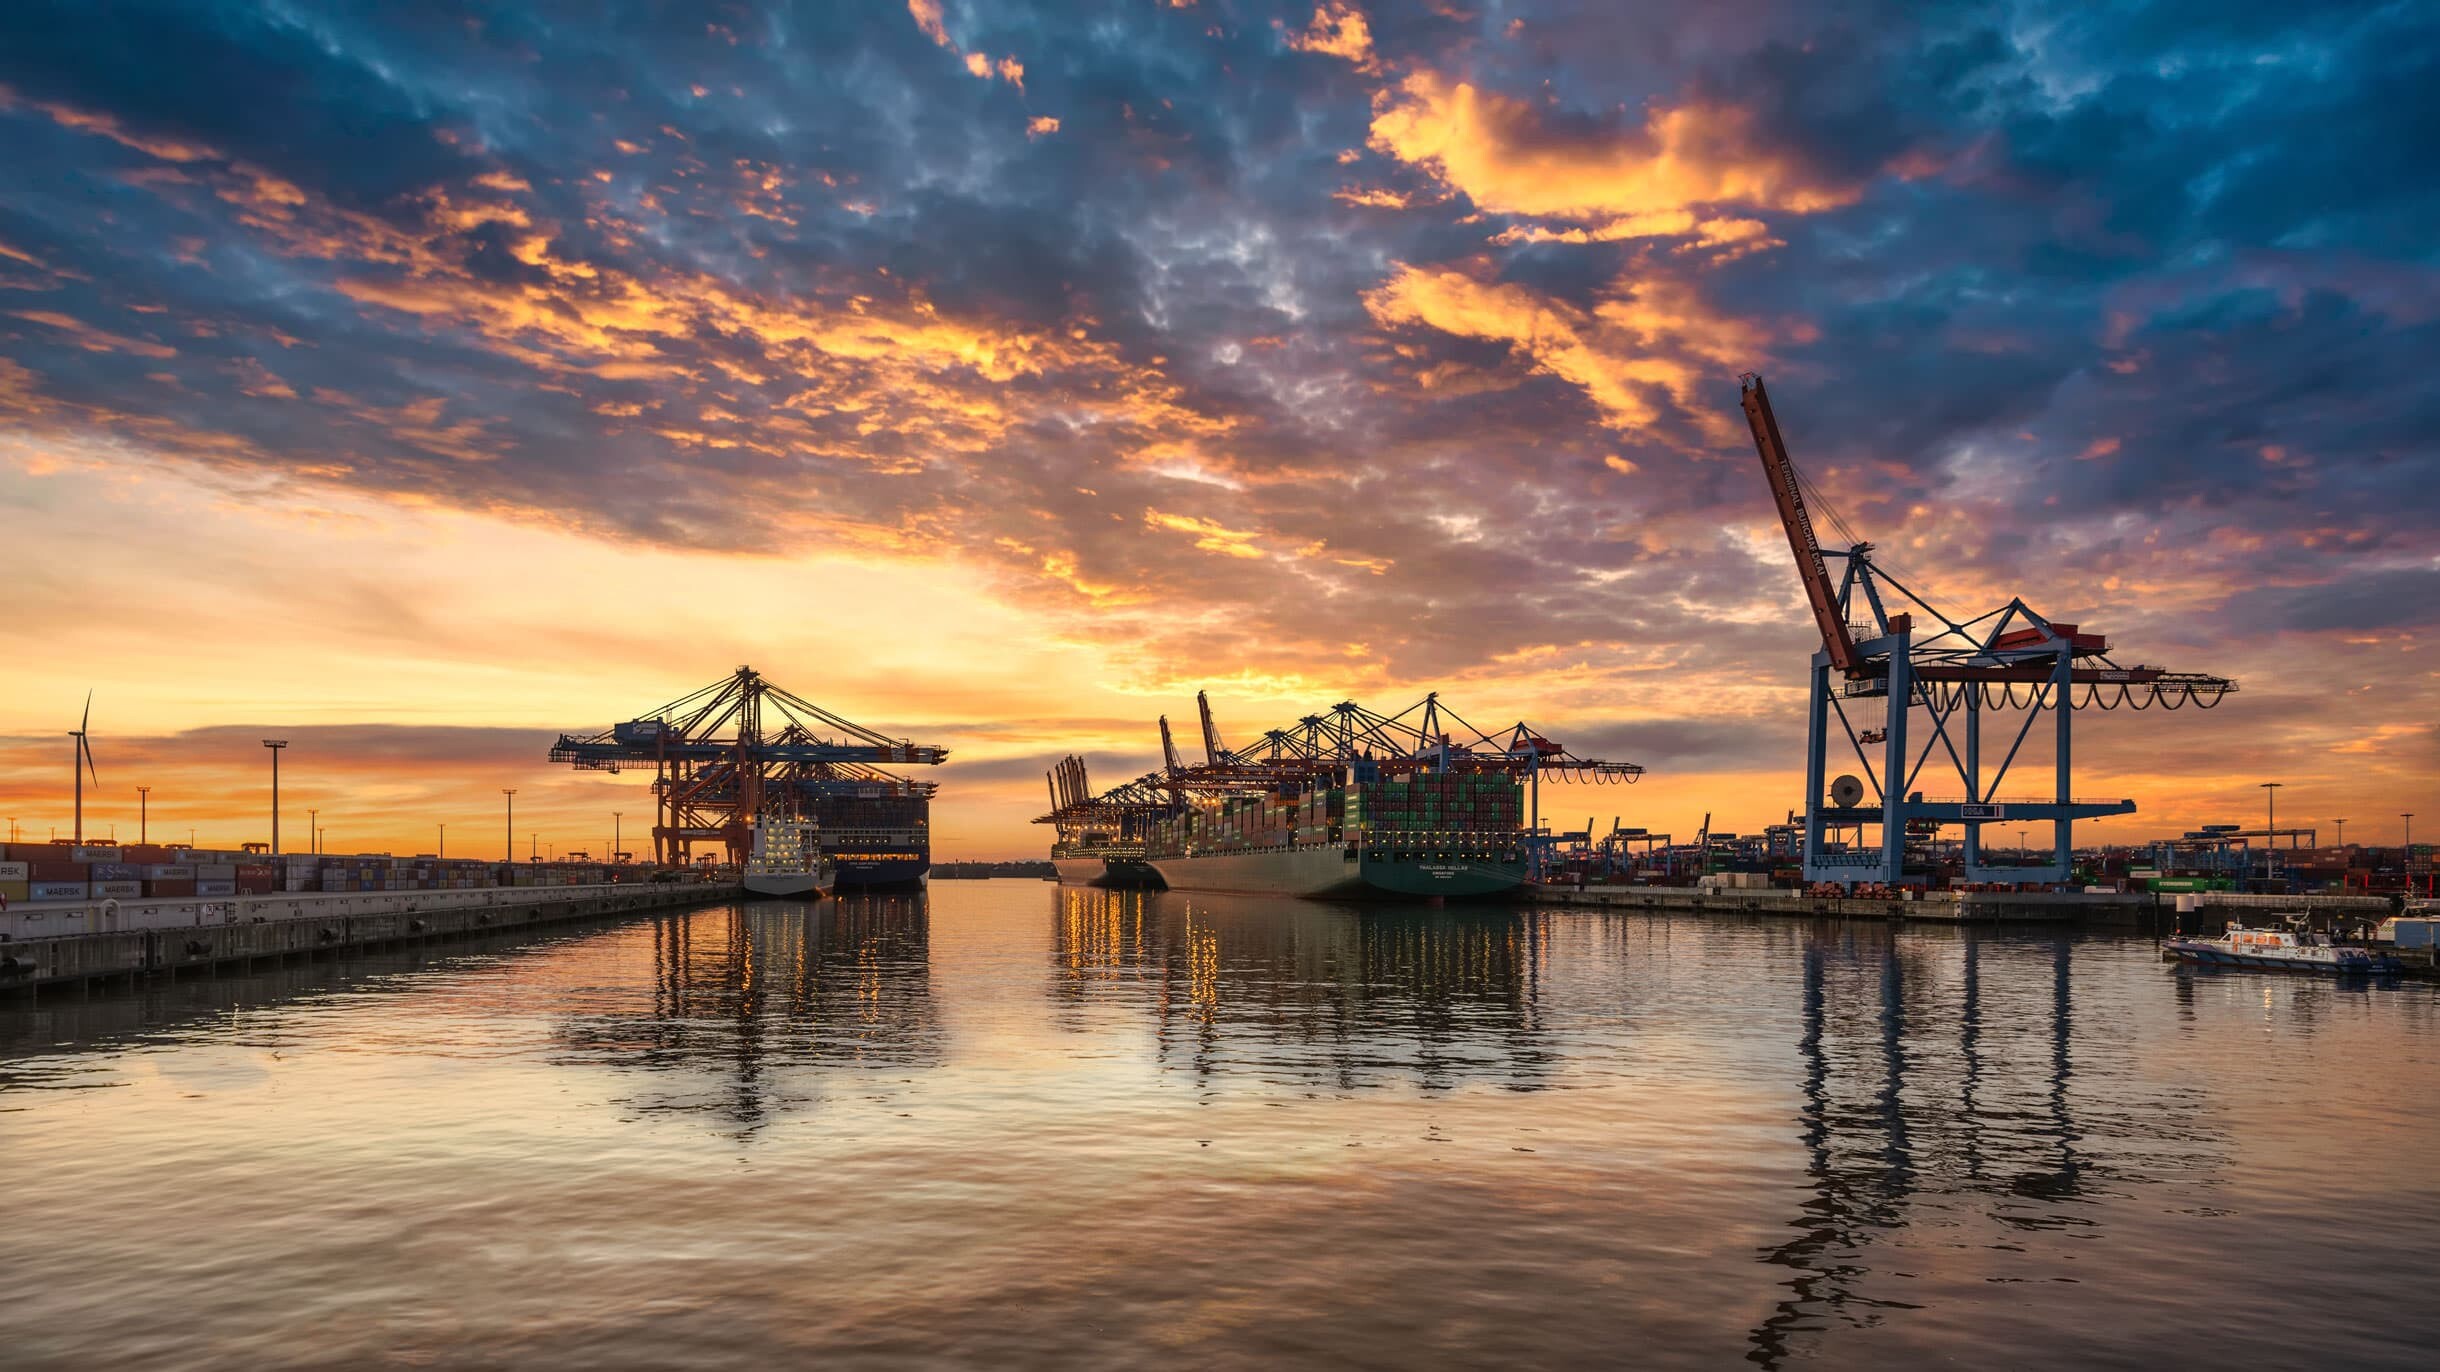 Sonnenuntergang im Hamburger Hafen. Herrliche Farben lassen den Hafen Hamburg in einem warmen Licht erstrahlen.